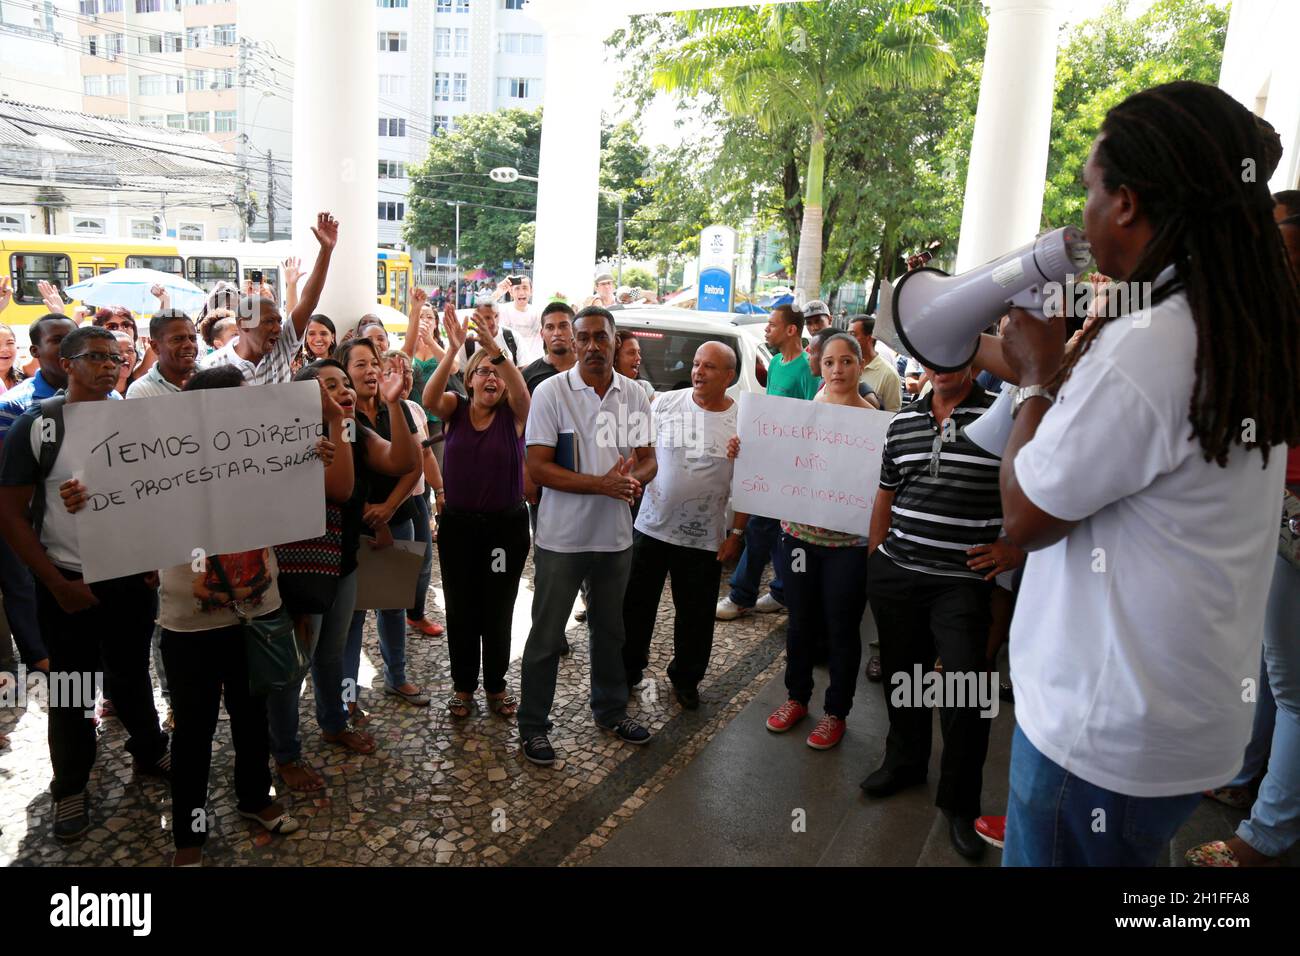 salvador, bahia / brésil - 12 mai 2015 : démonstration d'employés embauchés par l'Université fédérale de Bahia - UFBA - dans le quartier de Canela Banque D'Images